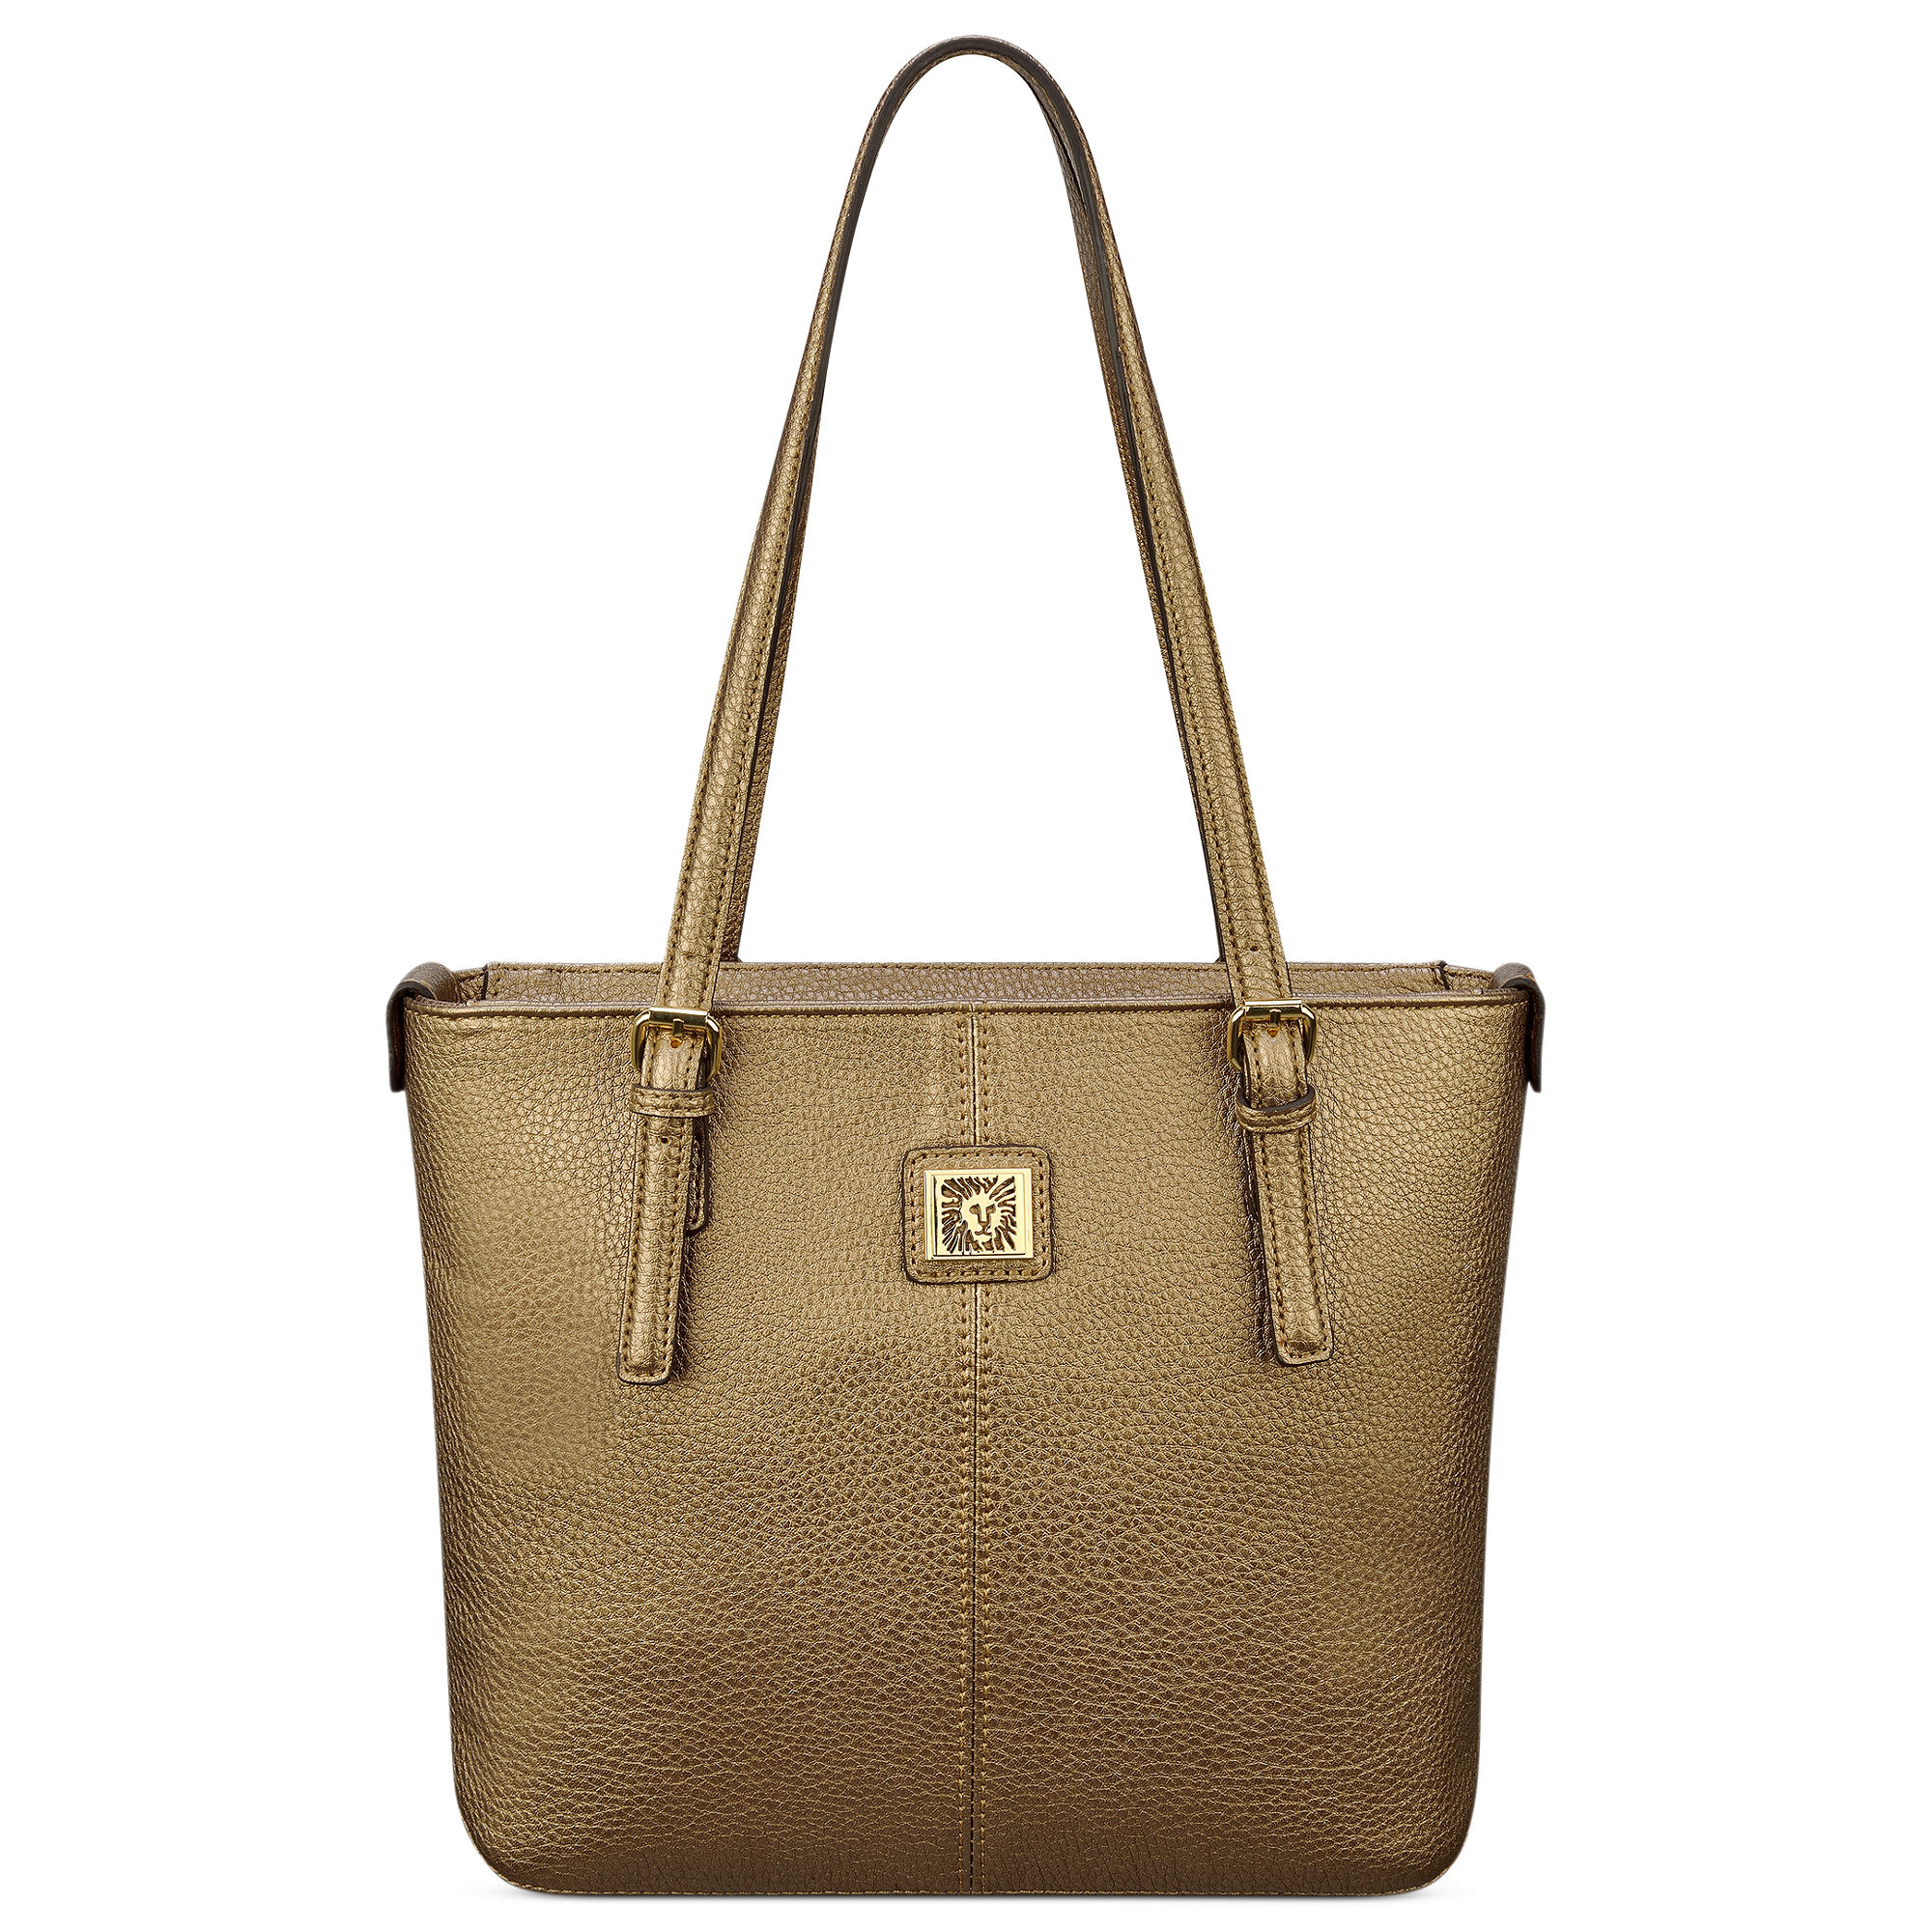 Anne Klein Bags Handbags | Paul Smith